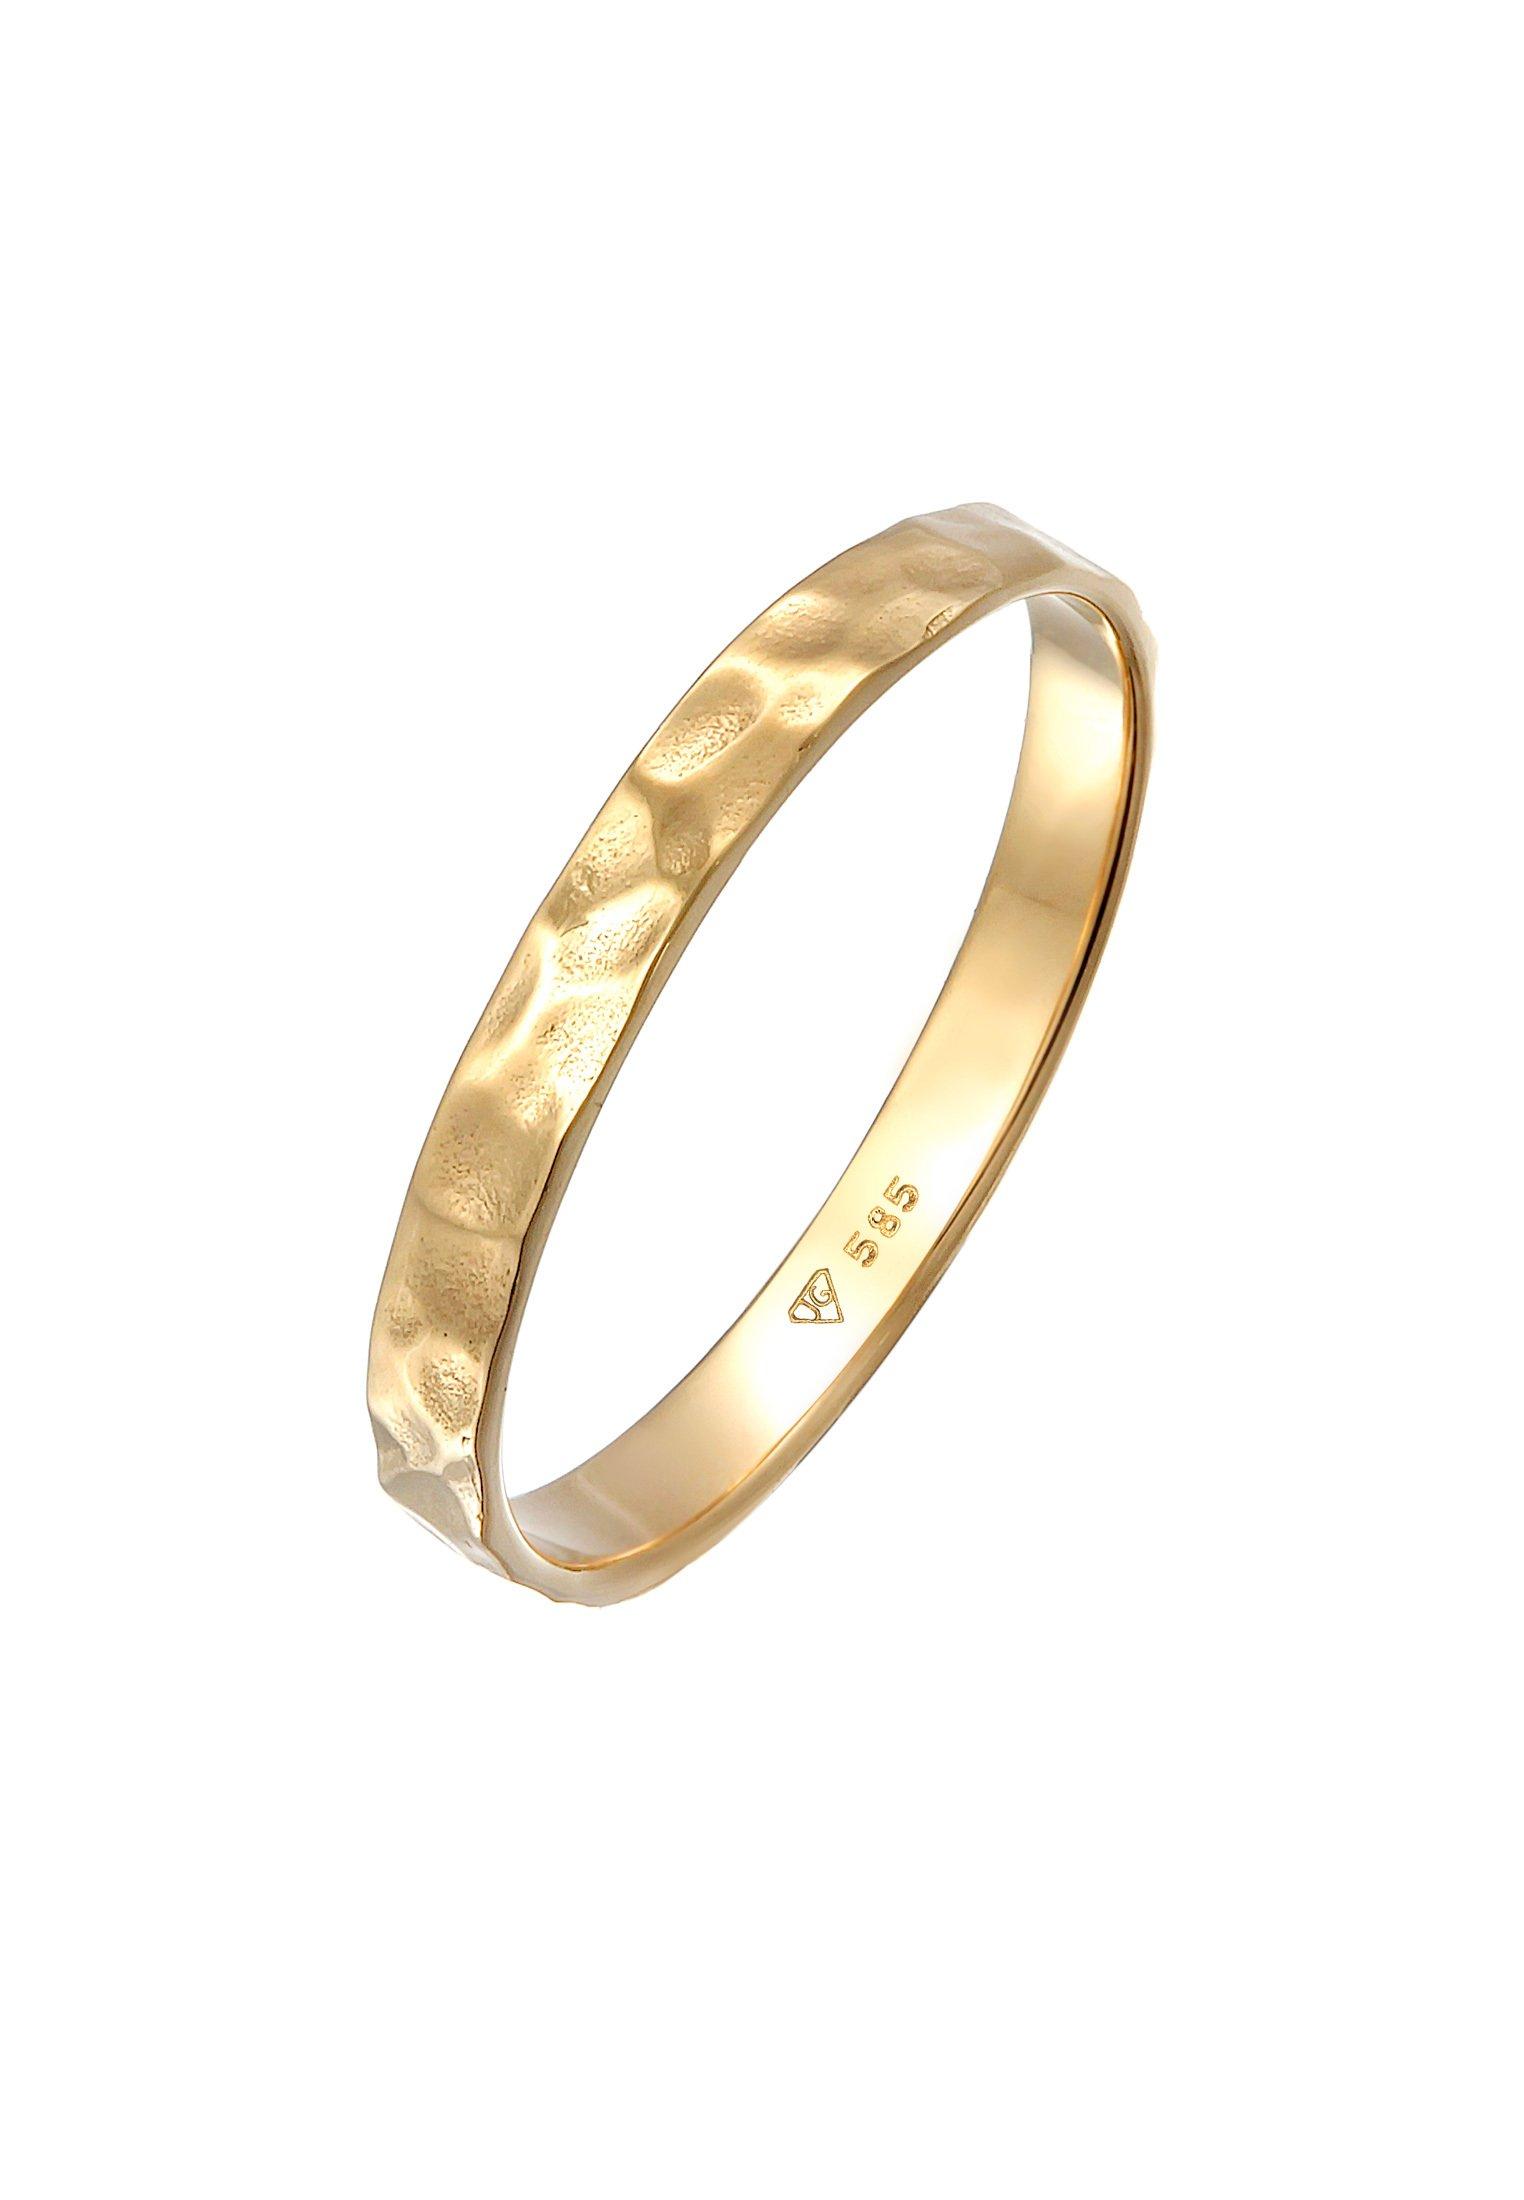 Ring Bandring Freundschaftsring Ehering 585er Gelbgold Damen Gold 52mm von Elli